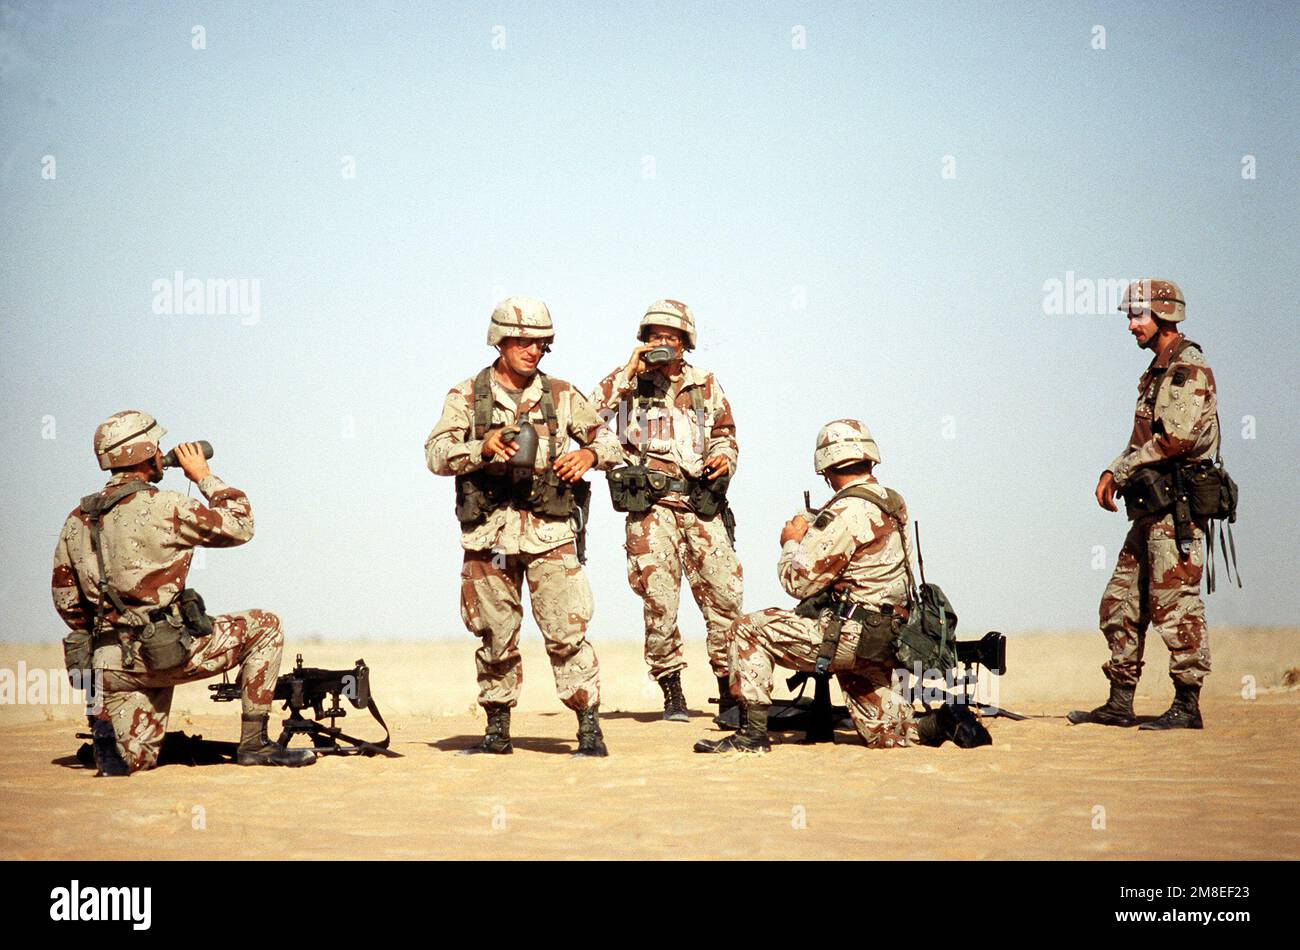 Des soldats de 1st BN., 505th parachute Infantry Regt., 82nd Airborne Dive., prennent une pause-eau tout en effectuant des exercices de mitrailleuses pendant l'opération Desert Shield. Objet opération/série : BOUCLIER DU DÉSERT pays : Arabie saoudite (SAU) Banque D'Images